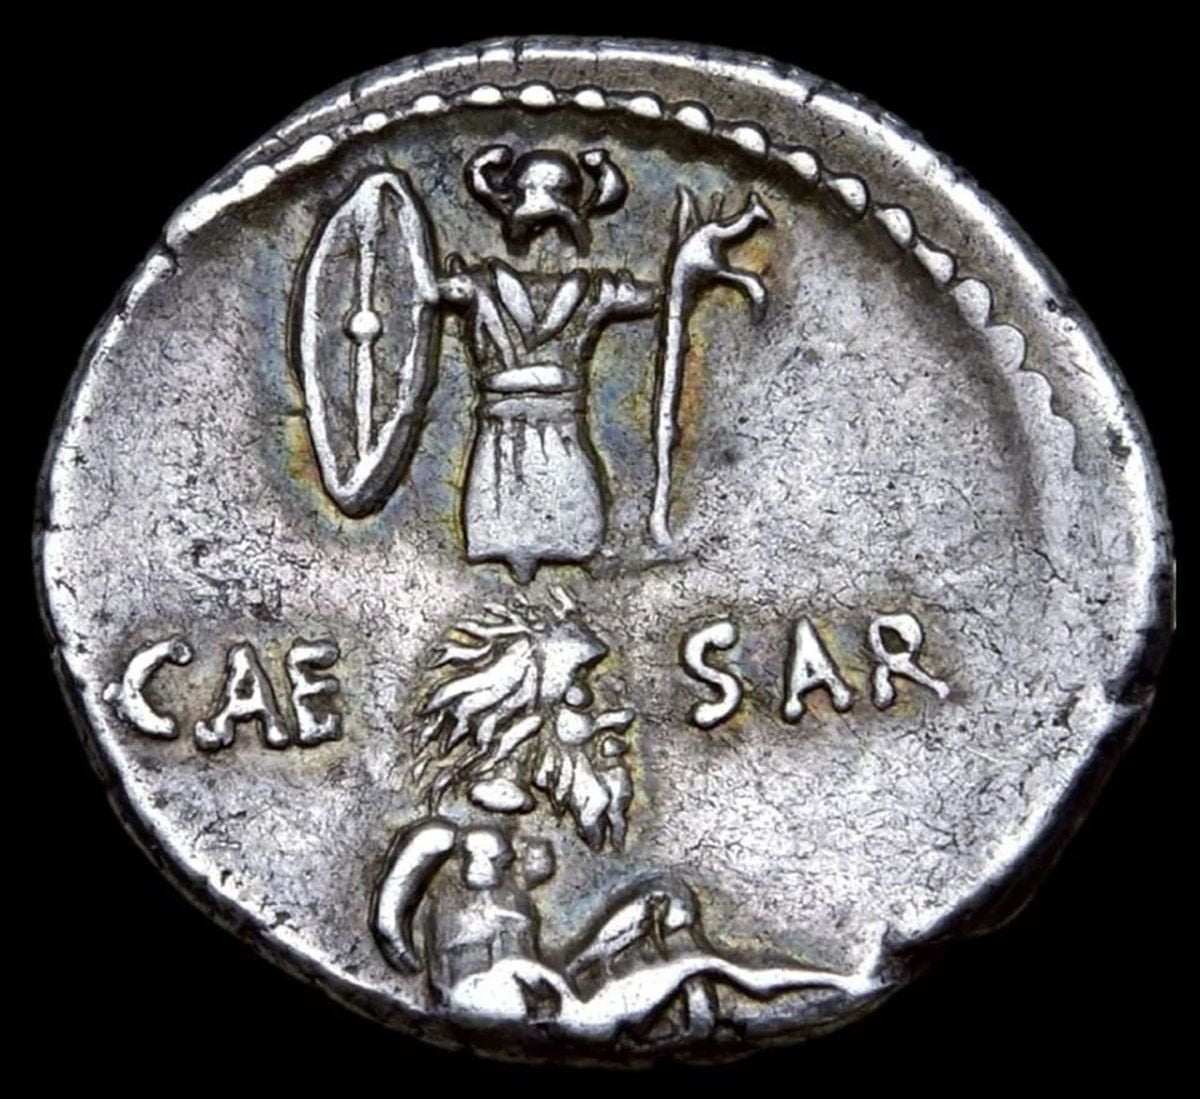 Moneta rzymska upamiętniająca triumf Cezara